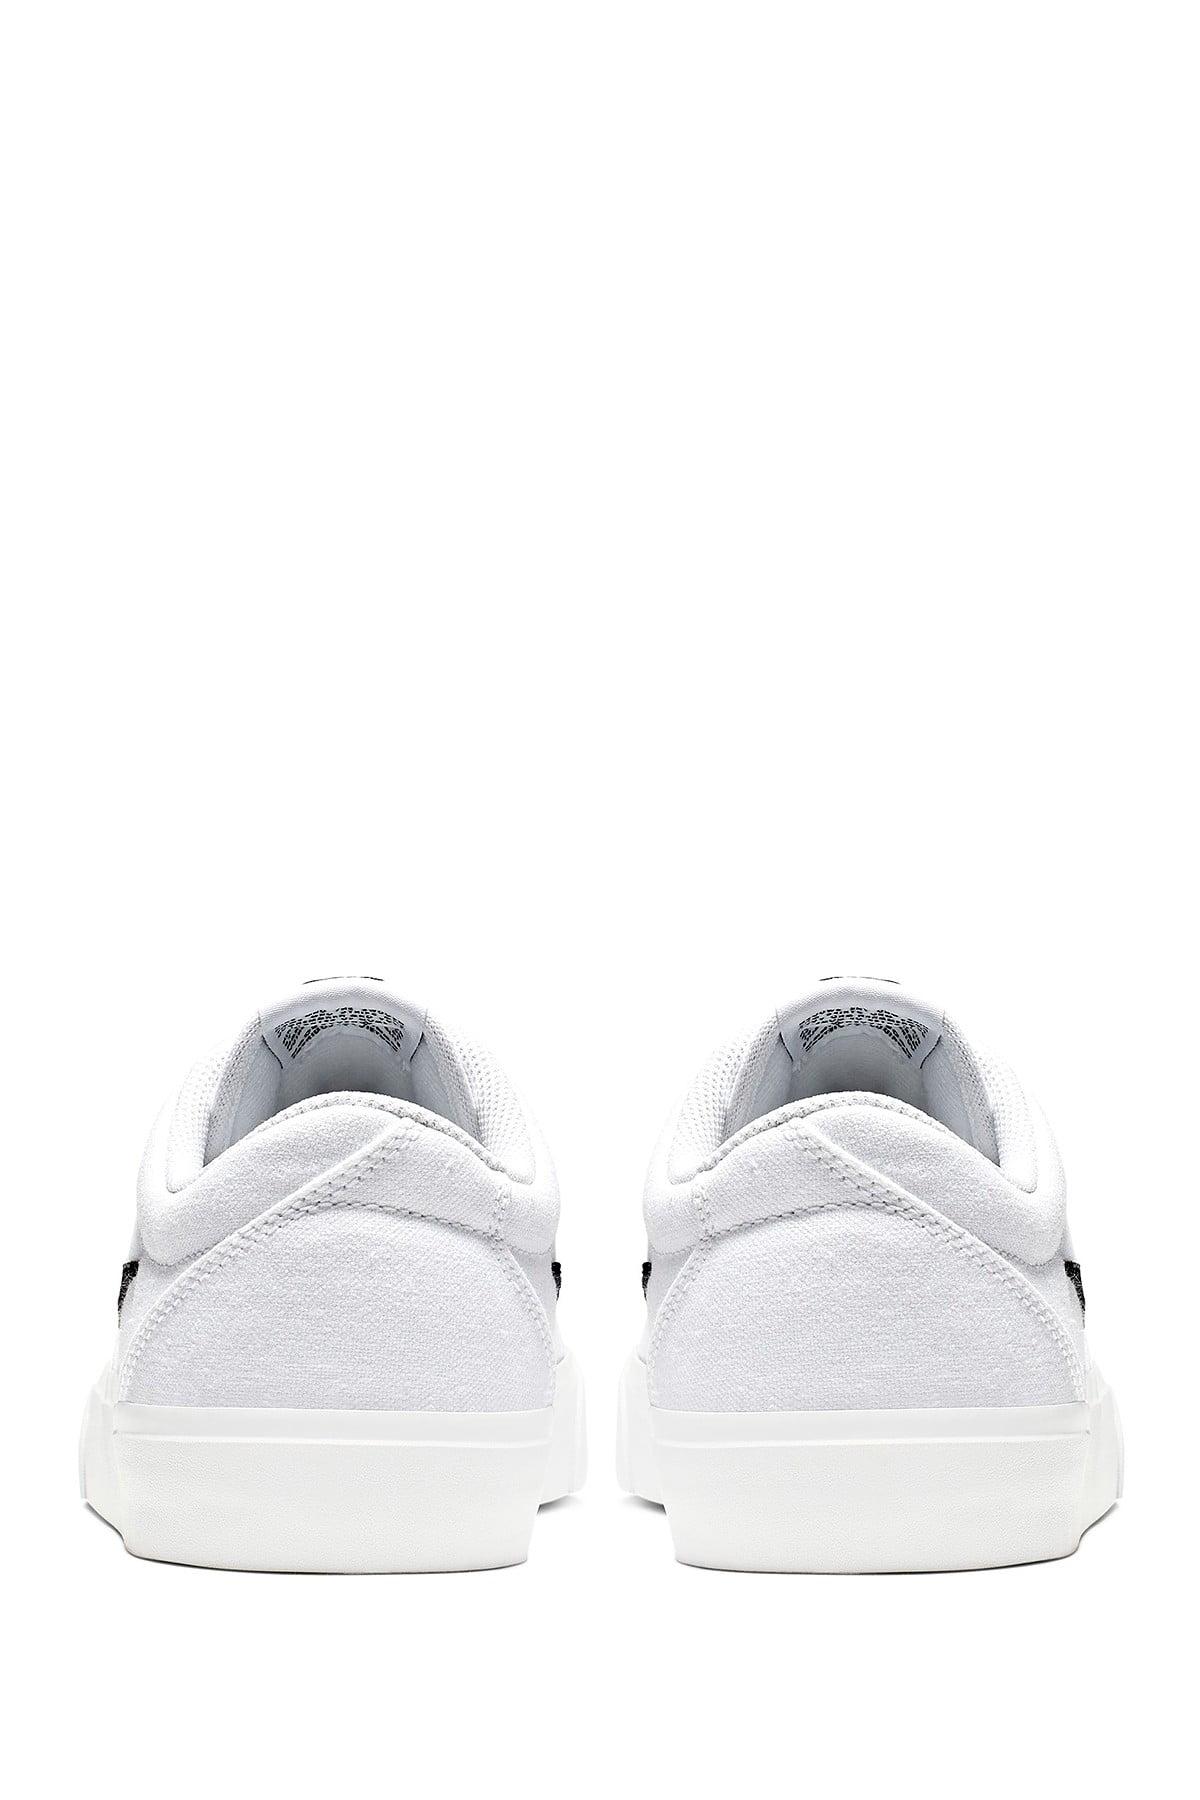 Buyr.com | Fashion Sneakers | NIKE SB Check Solarsoft Canvas, Black /  Black-black, 8.5